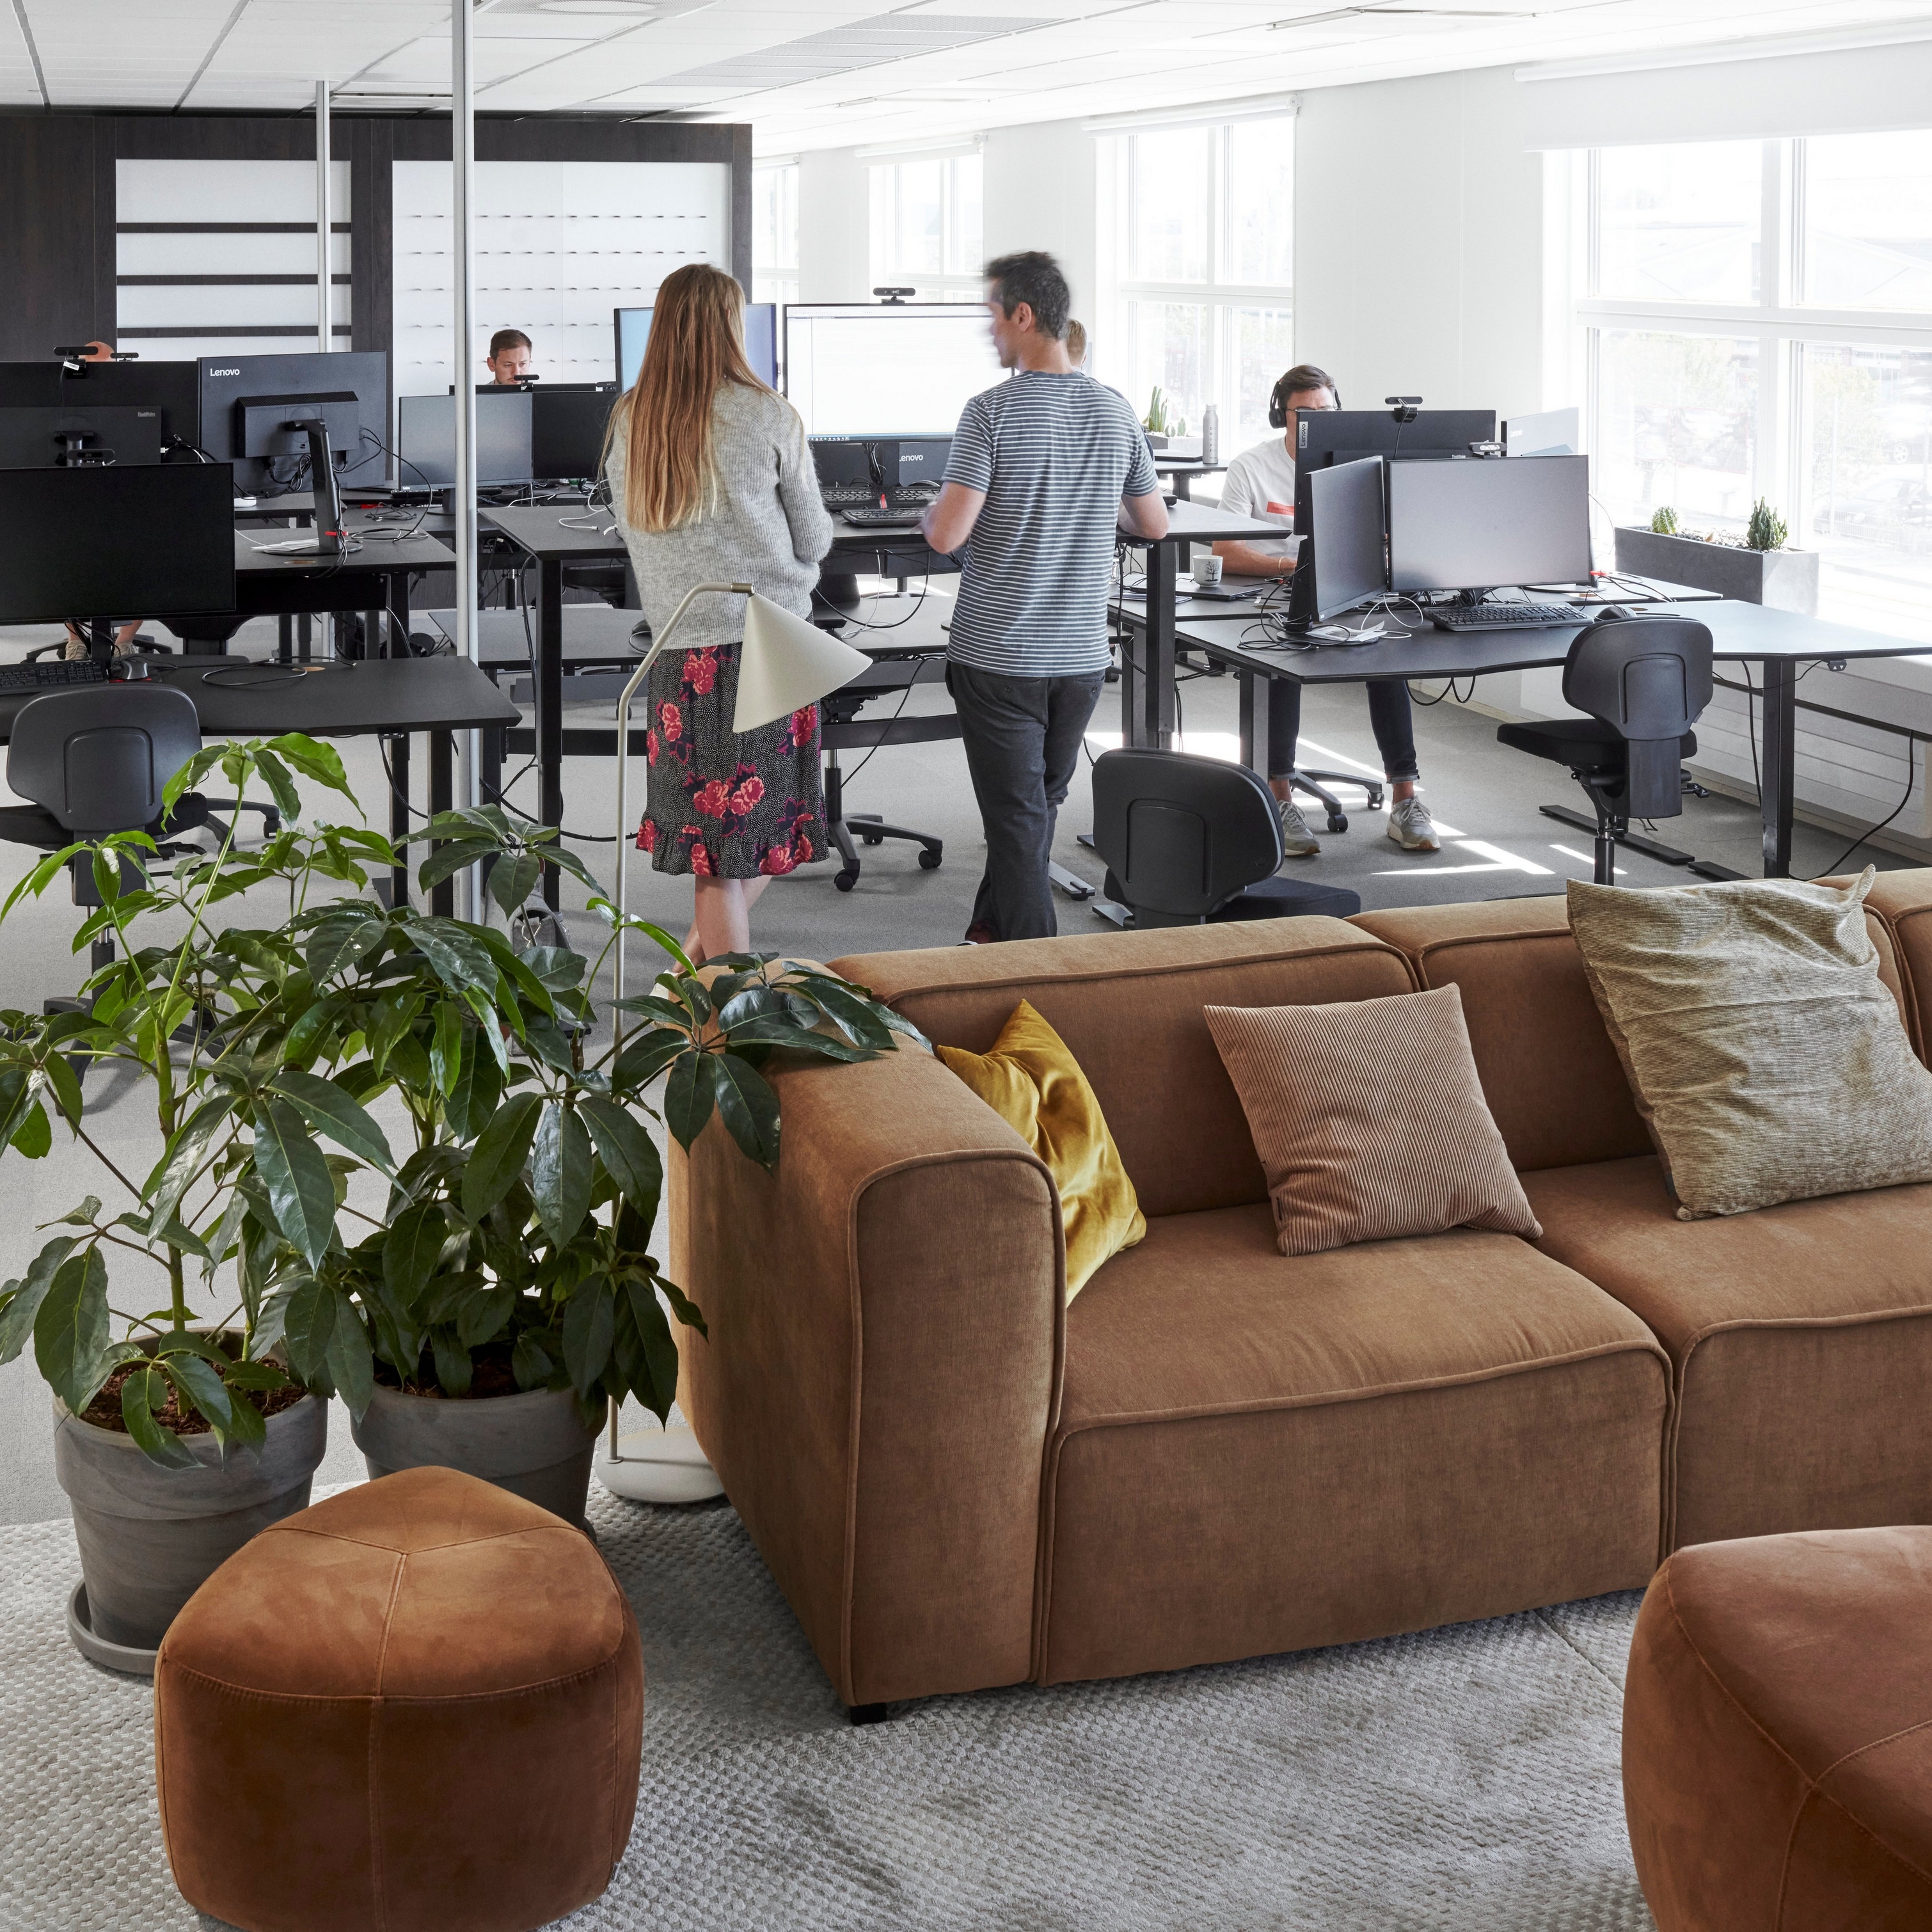 Der moderne Bürobereich des Hauptsitzes von BoConcept mit Mitarbeitern, Computern, Pflanzen und einem braunen Carmo Sofa.